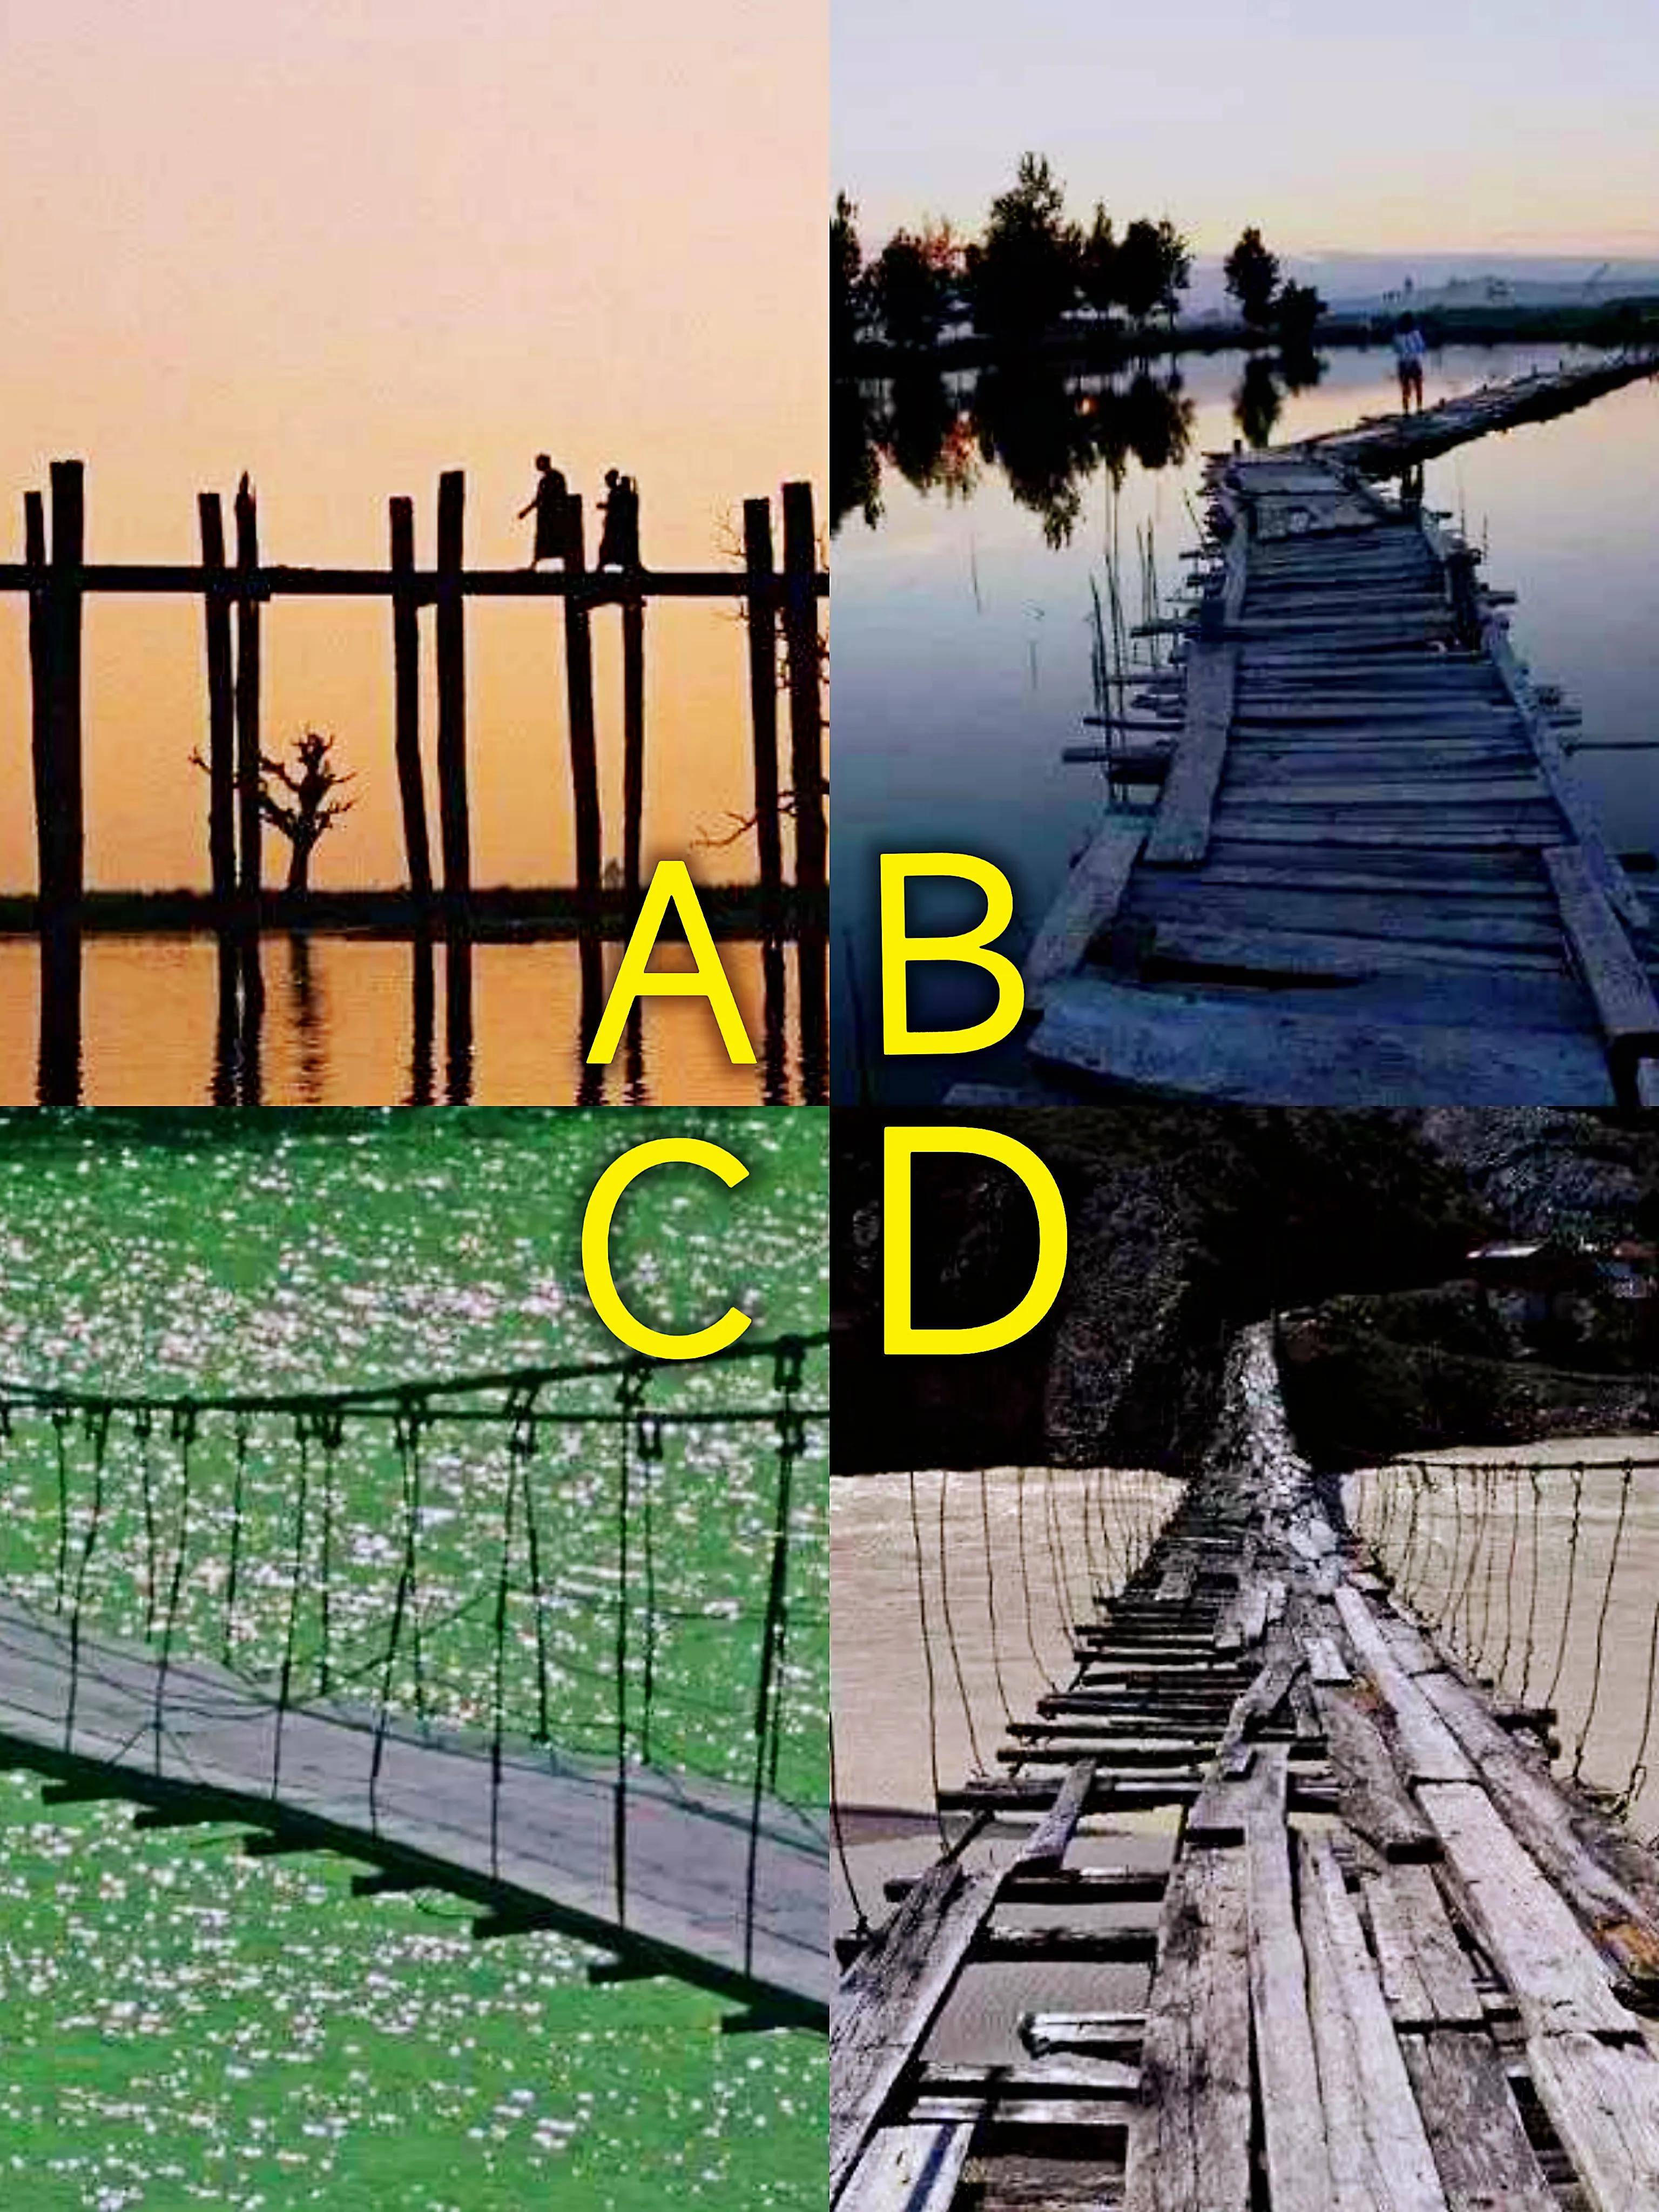 Trắc nghiệm tâm lý: Theo bạn, cây cầu nào nguy hiểm nhất? - 1